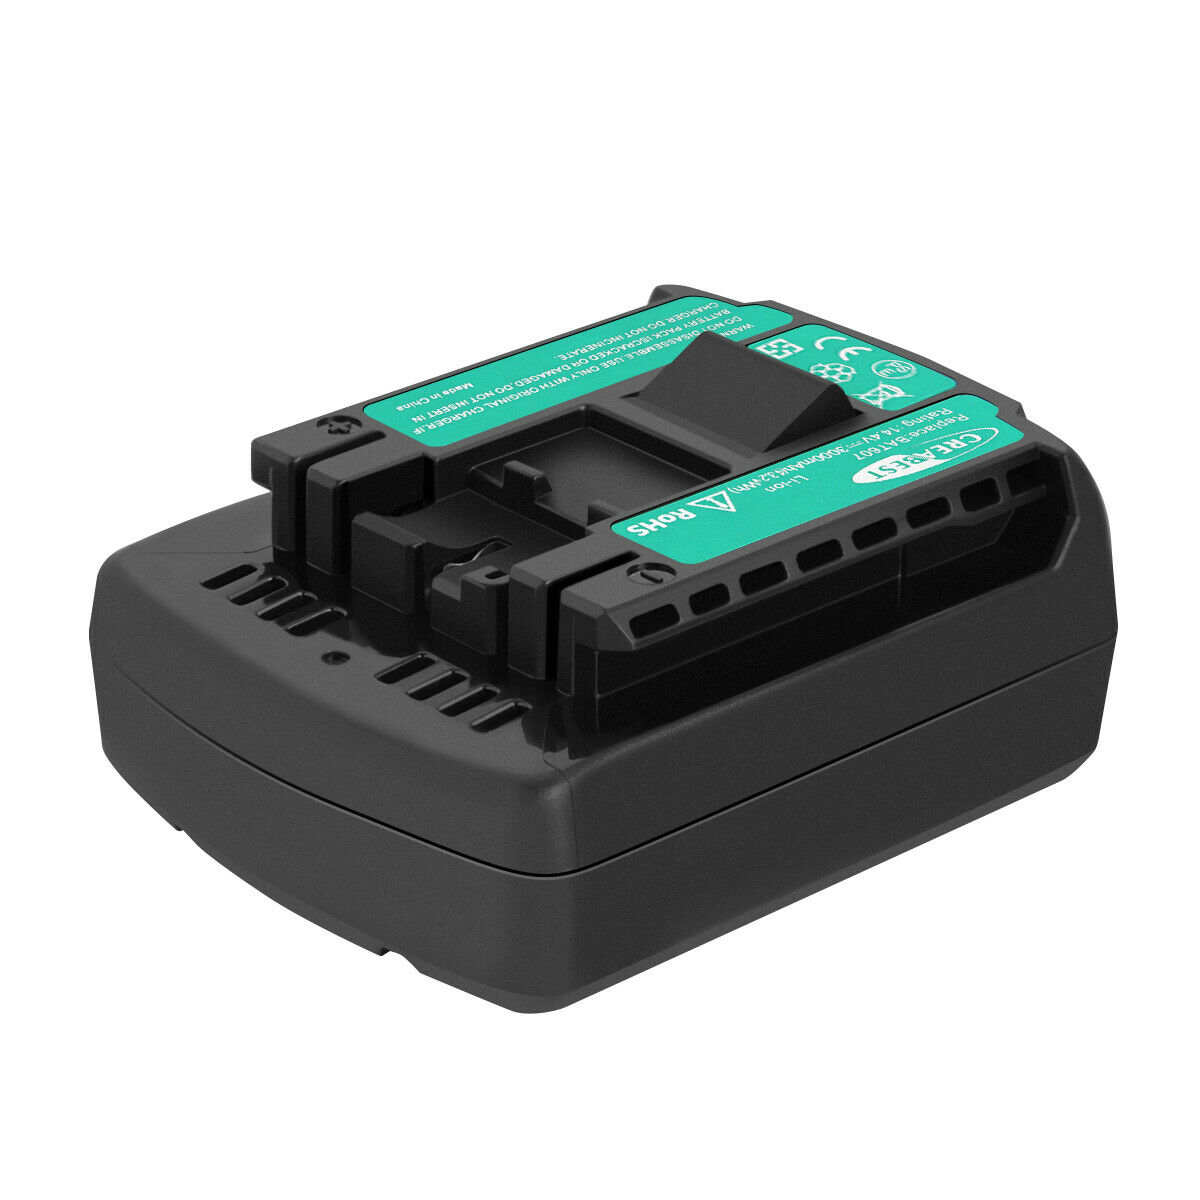 BOSCH GSR 1440-LI, HDB180-02, PB360S, TSR 1080-LI kompatibel Batteri